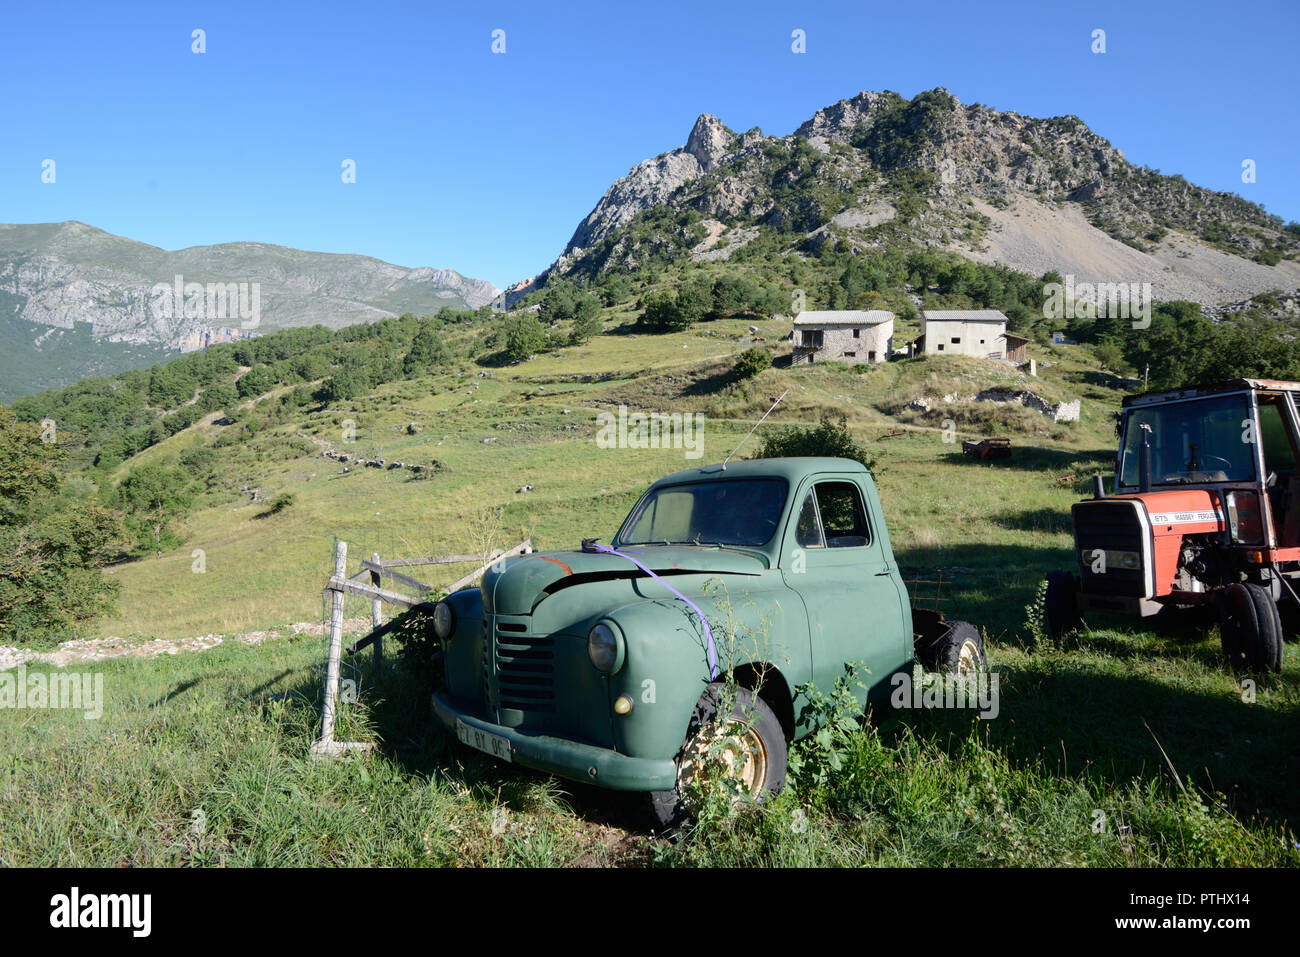 Abbandonato Vintage Peugeot 203 Pick Up Truck (1948-1960) & 675 trattore Massey Ferguson su Hill Farm a Taloire in Verdon Gorge sulle Alpi francesi Francia Foto Stock